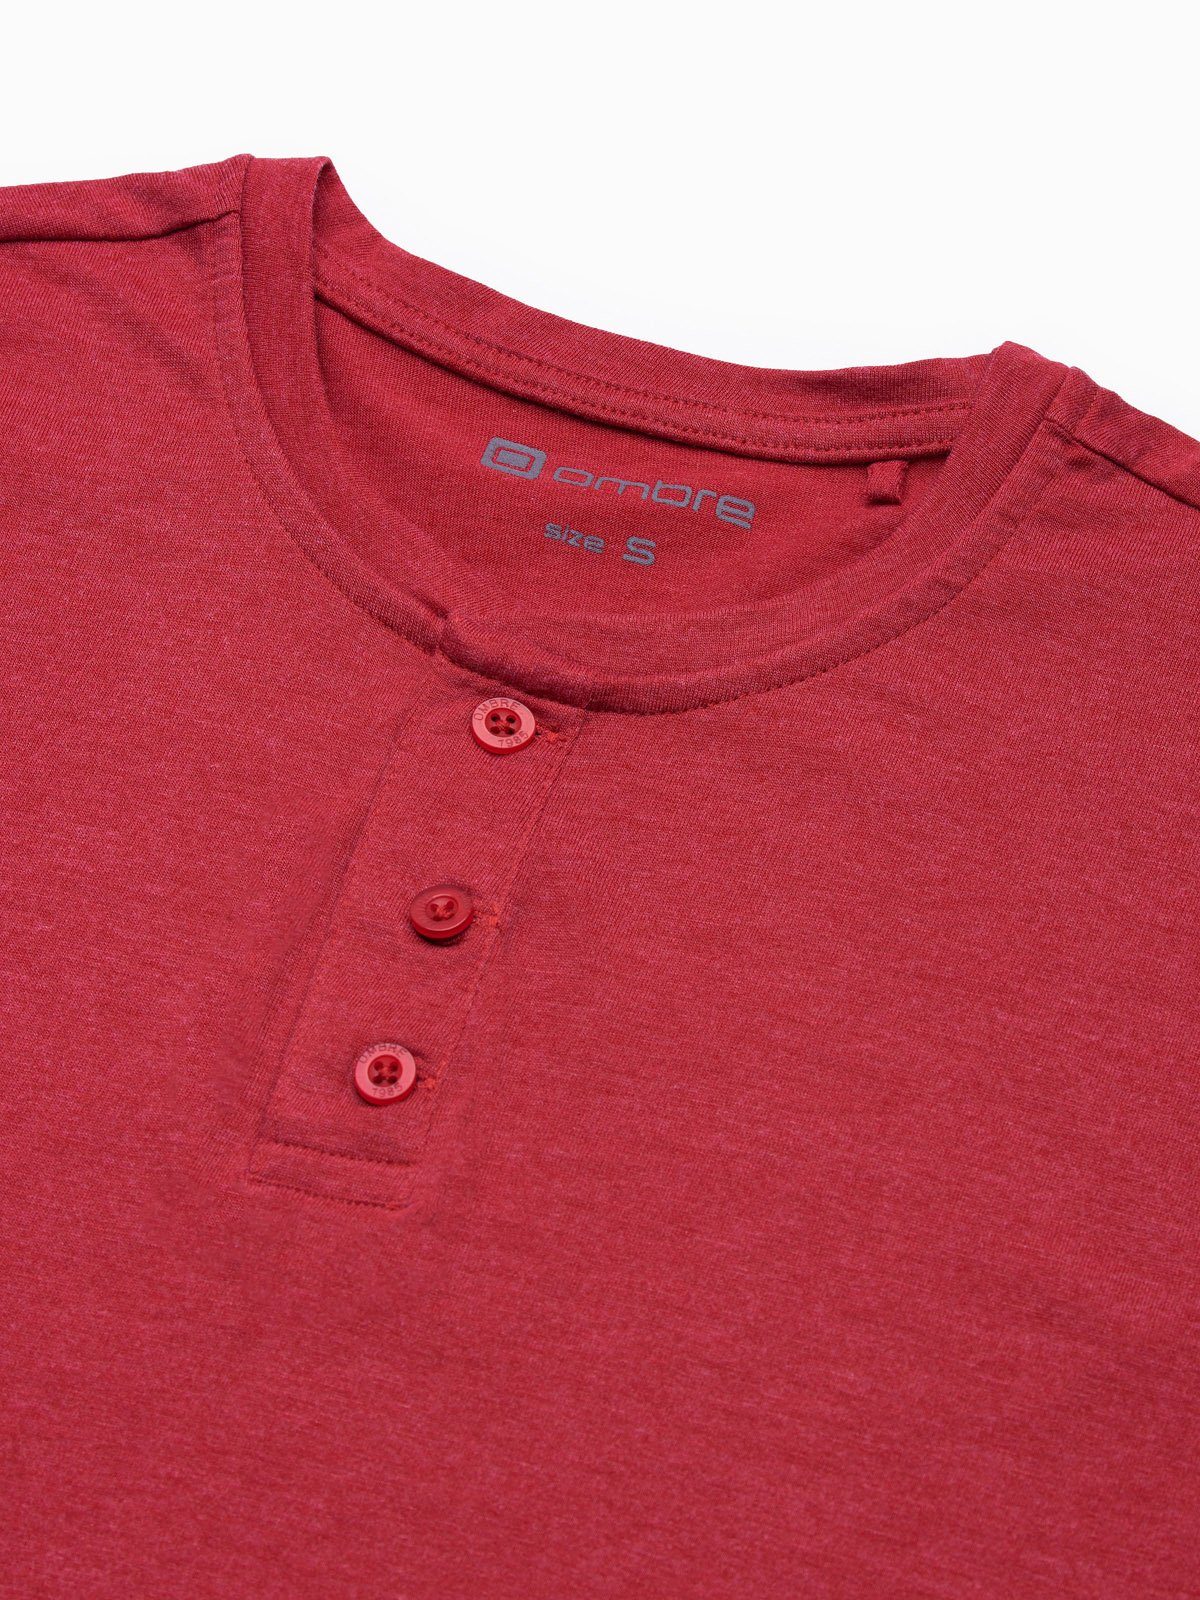 S1390 - Herren-T-Shirt OMBRE M T-Shirt rot meliert Einfarbiges